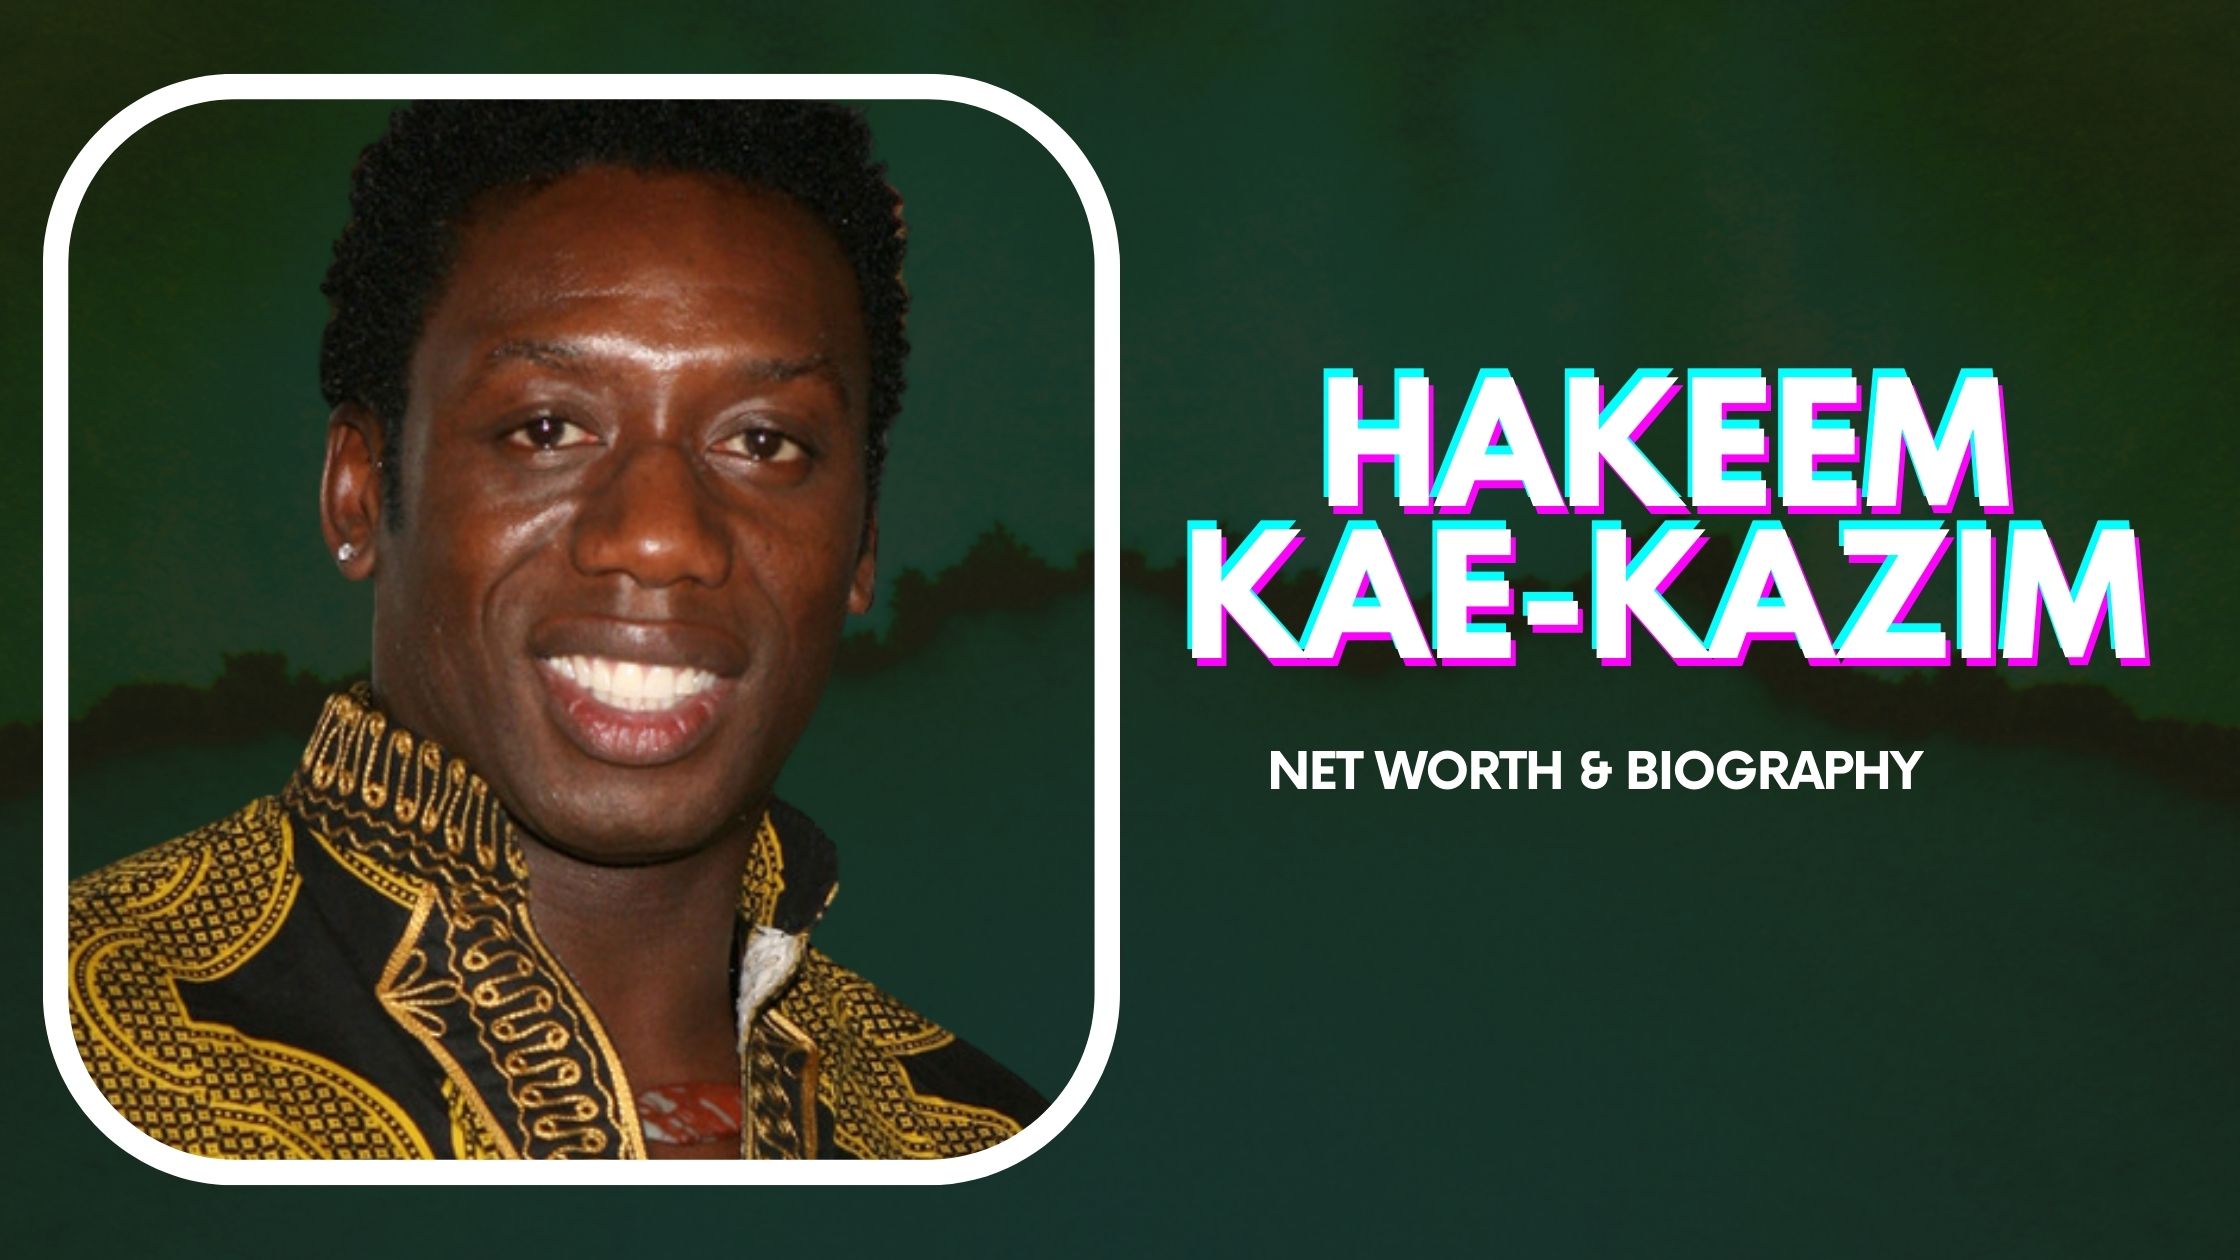 Hakeem Kae-Kazim Net Worth And Biography